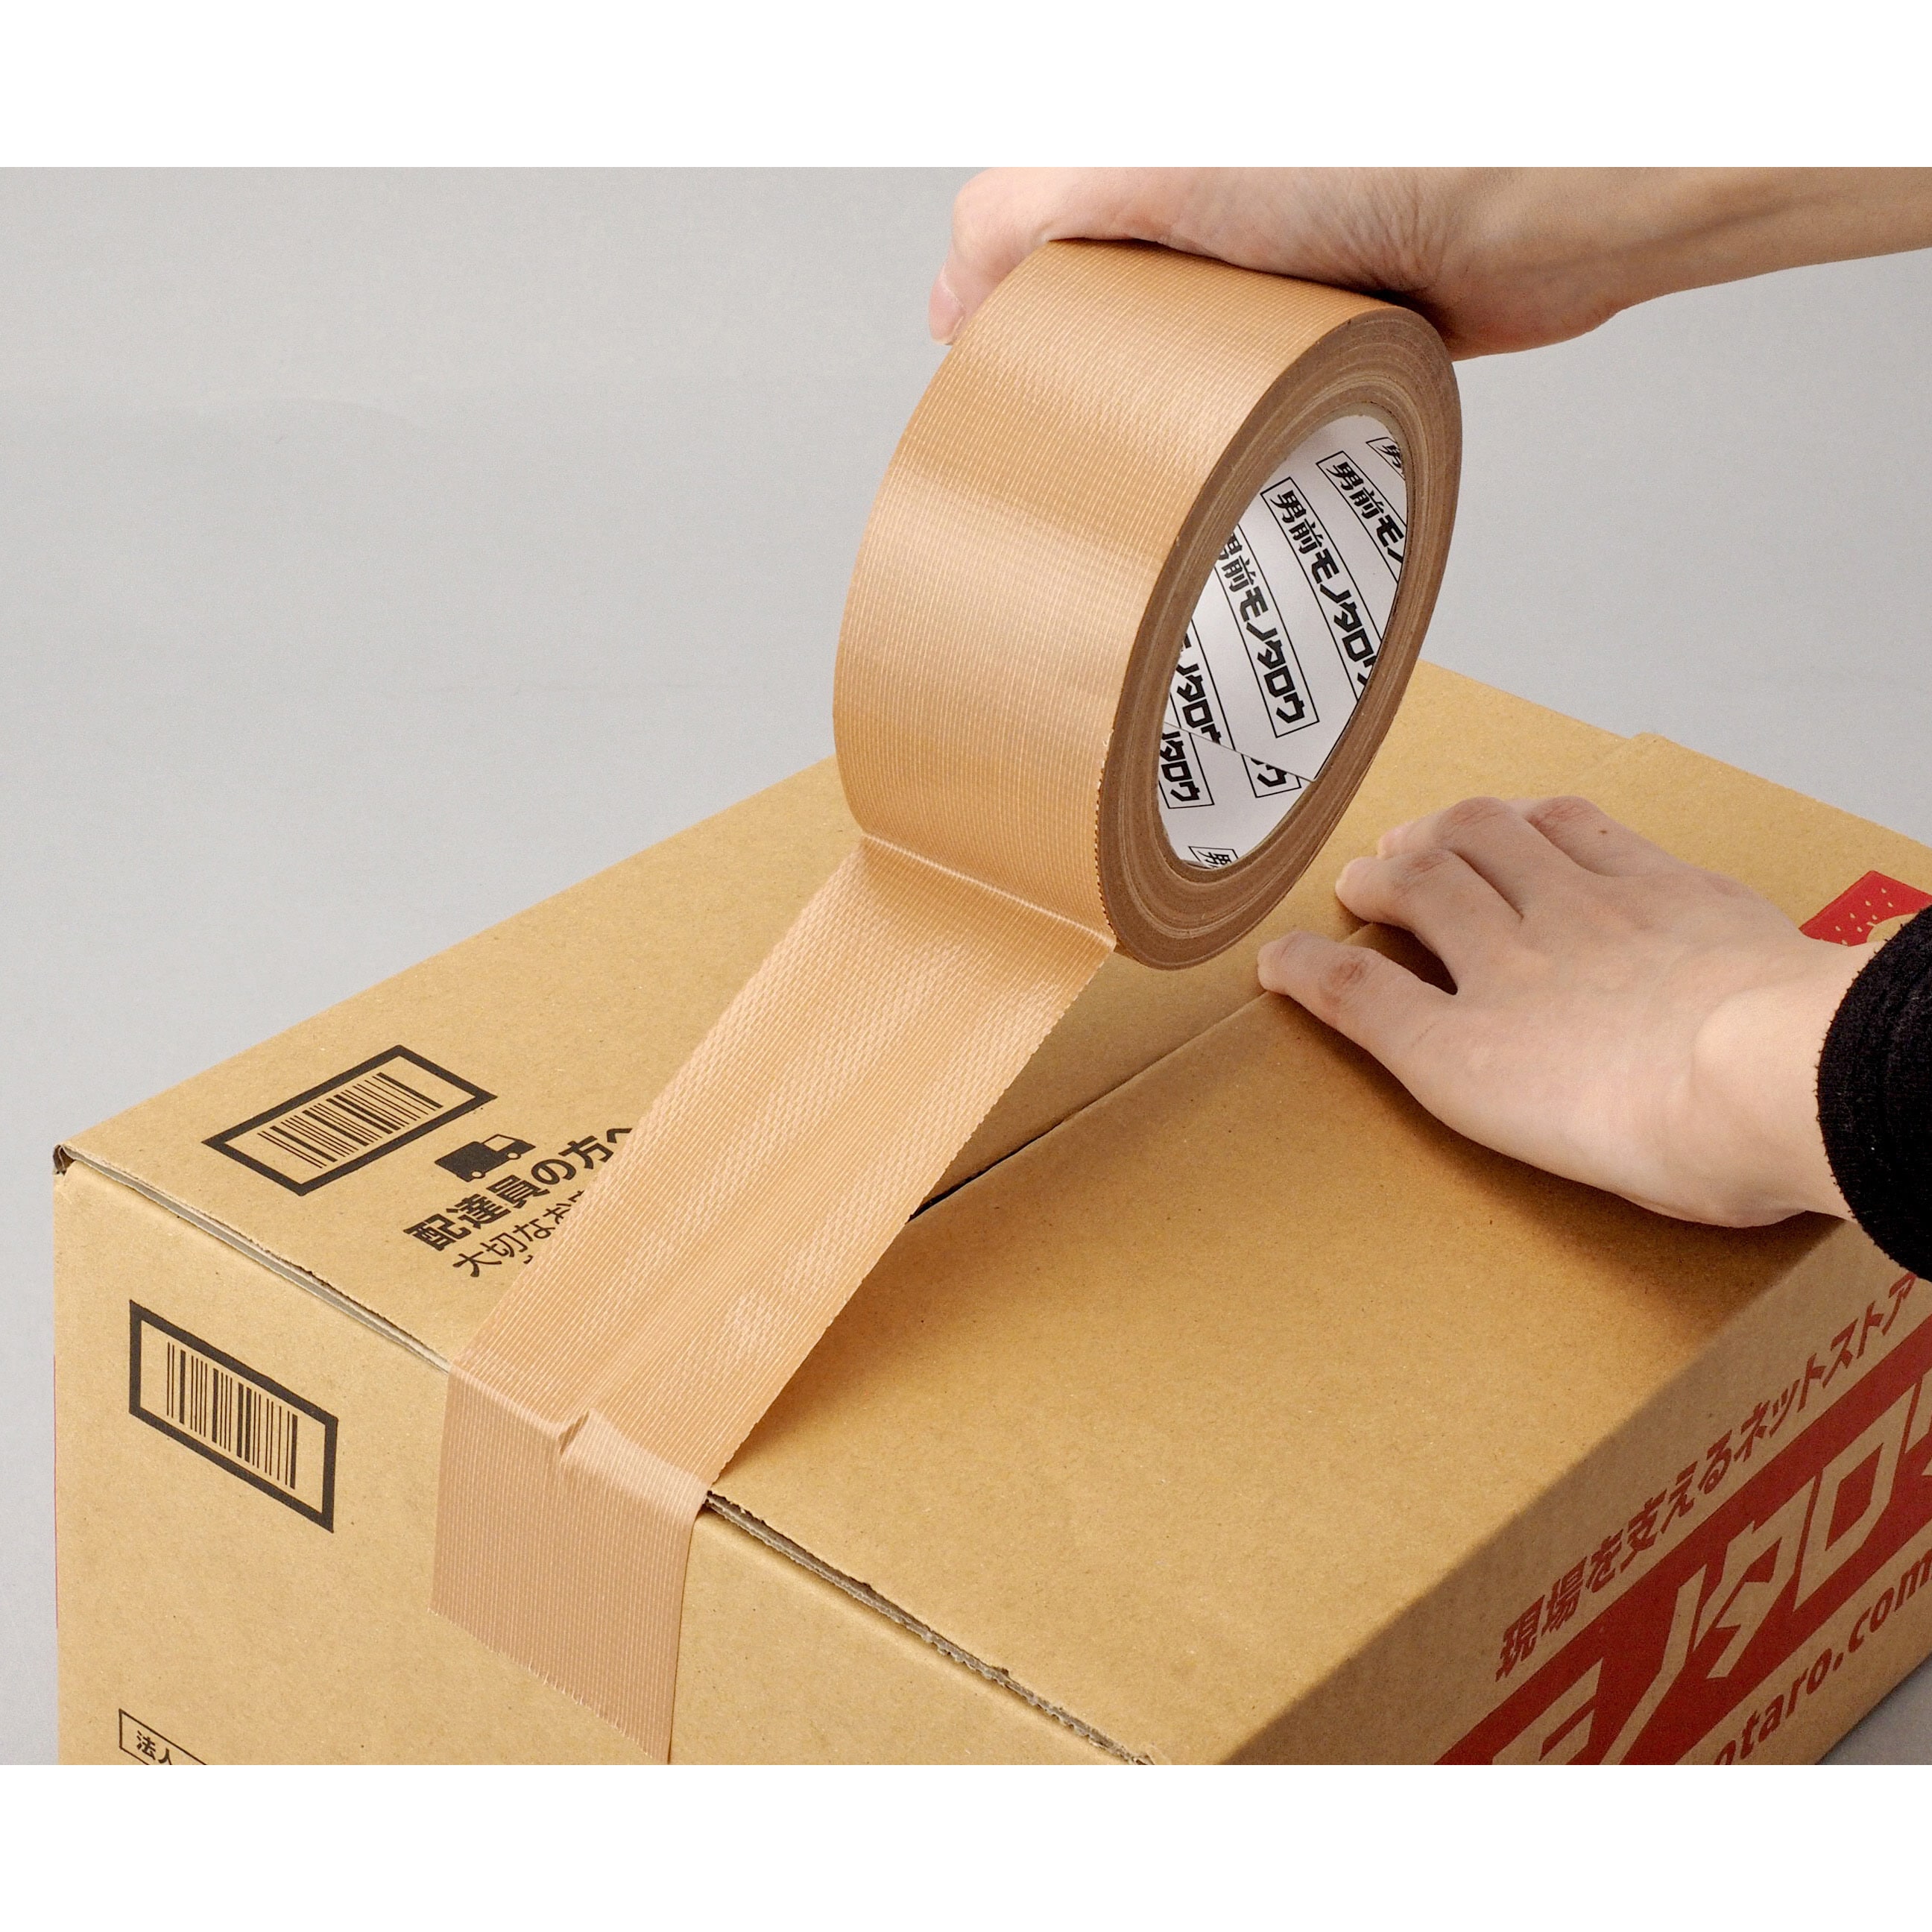 ライオン事務器 布テープ ノンパッケージ 50mm×25m KN-859NP 1箱(30巻) 梱包、テープ